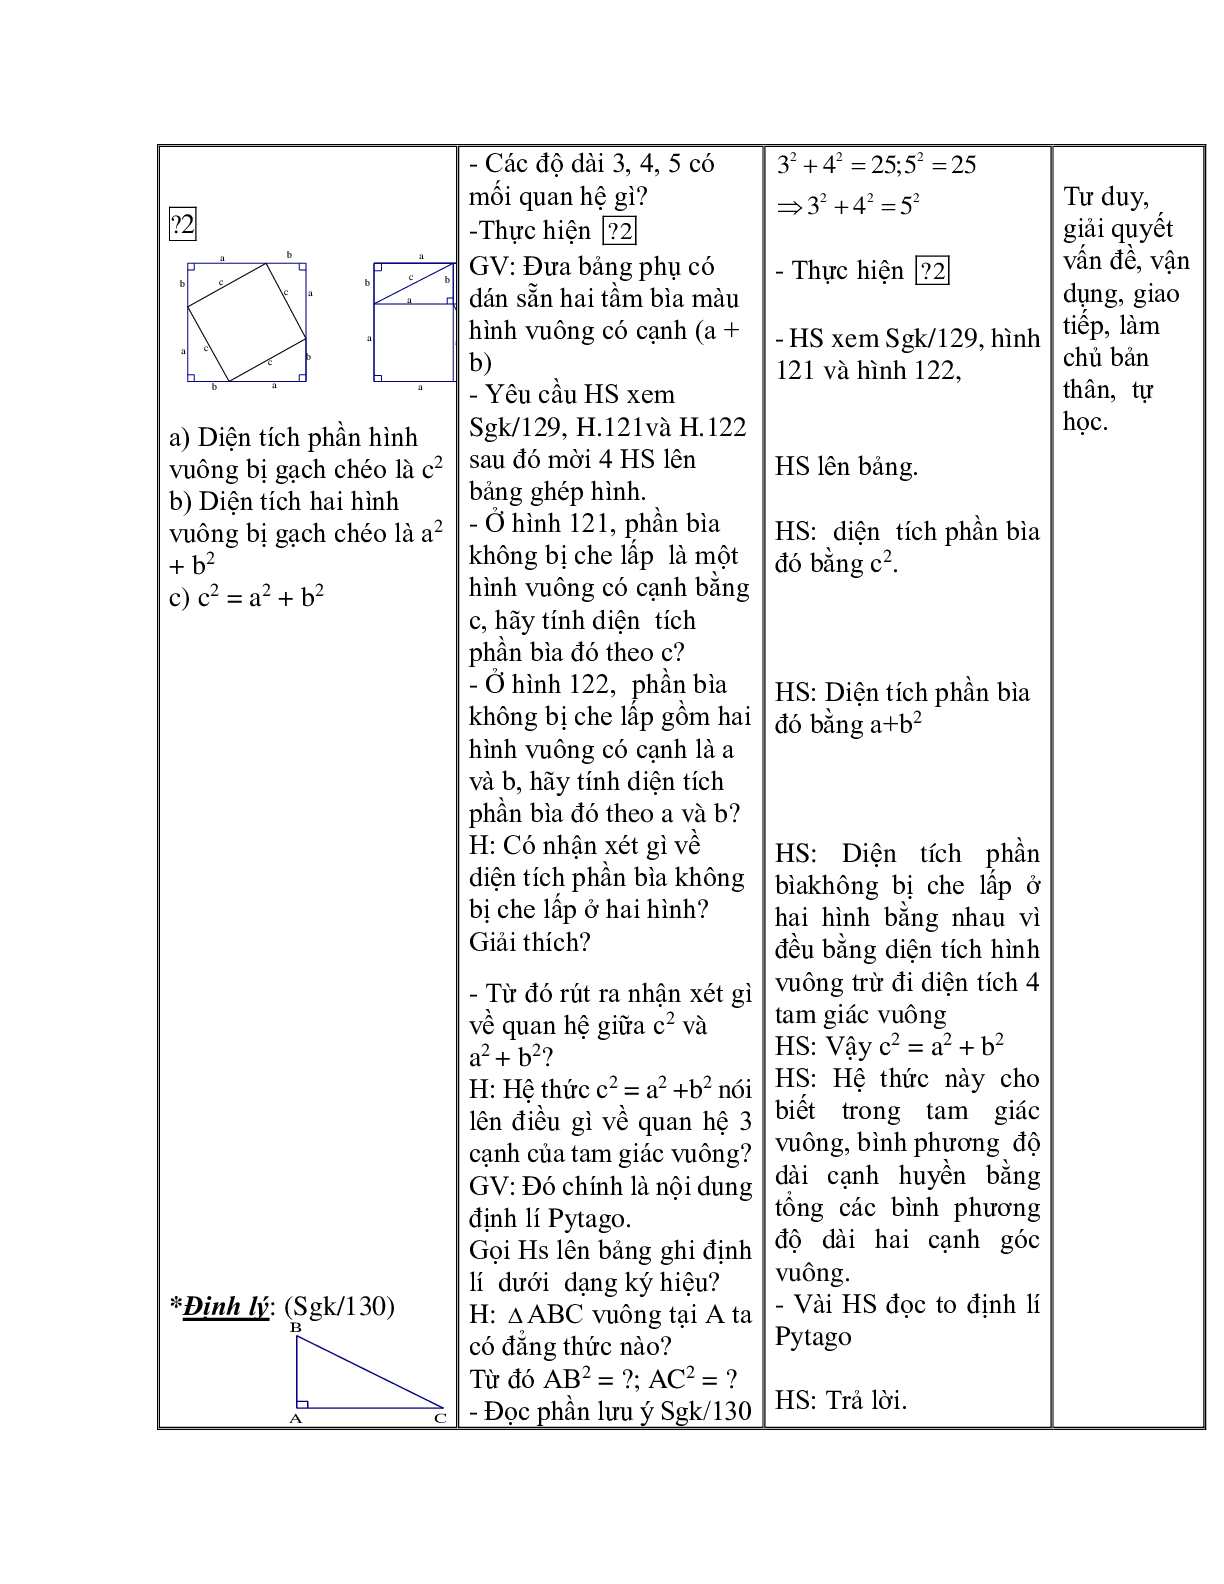 Giáo án Toán học 7 bài 7: Định lý Py - ta - go hay nhất (trang 3)